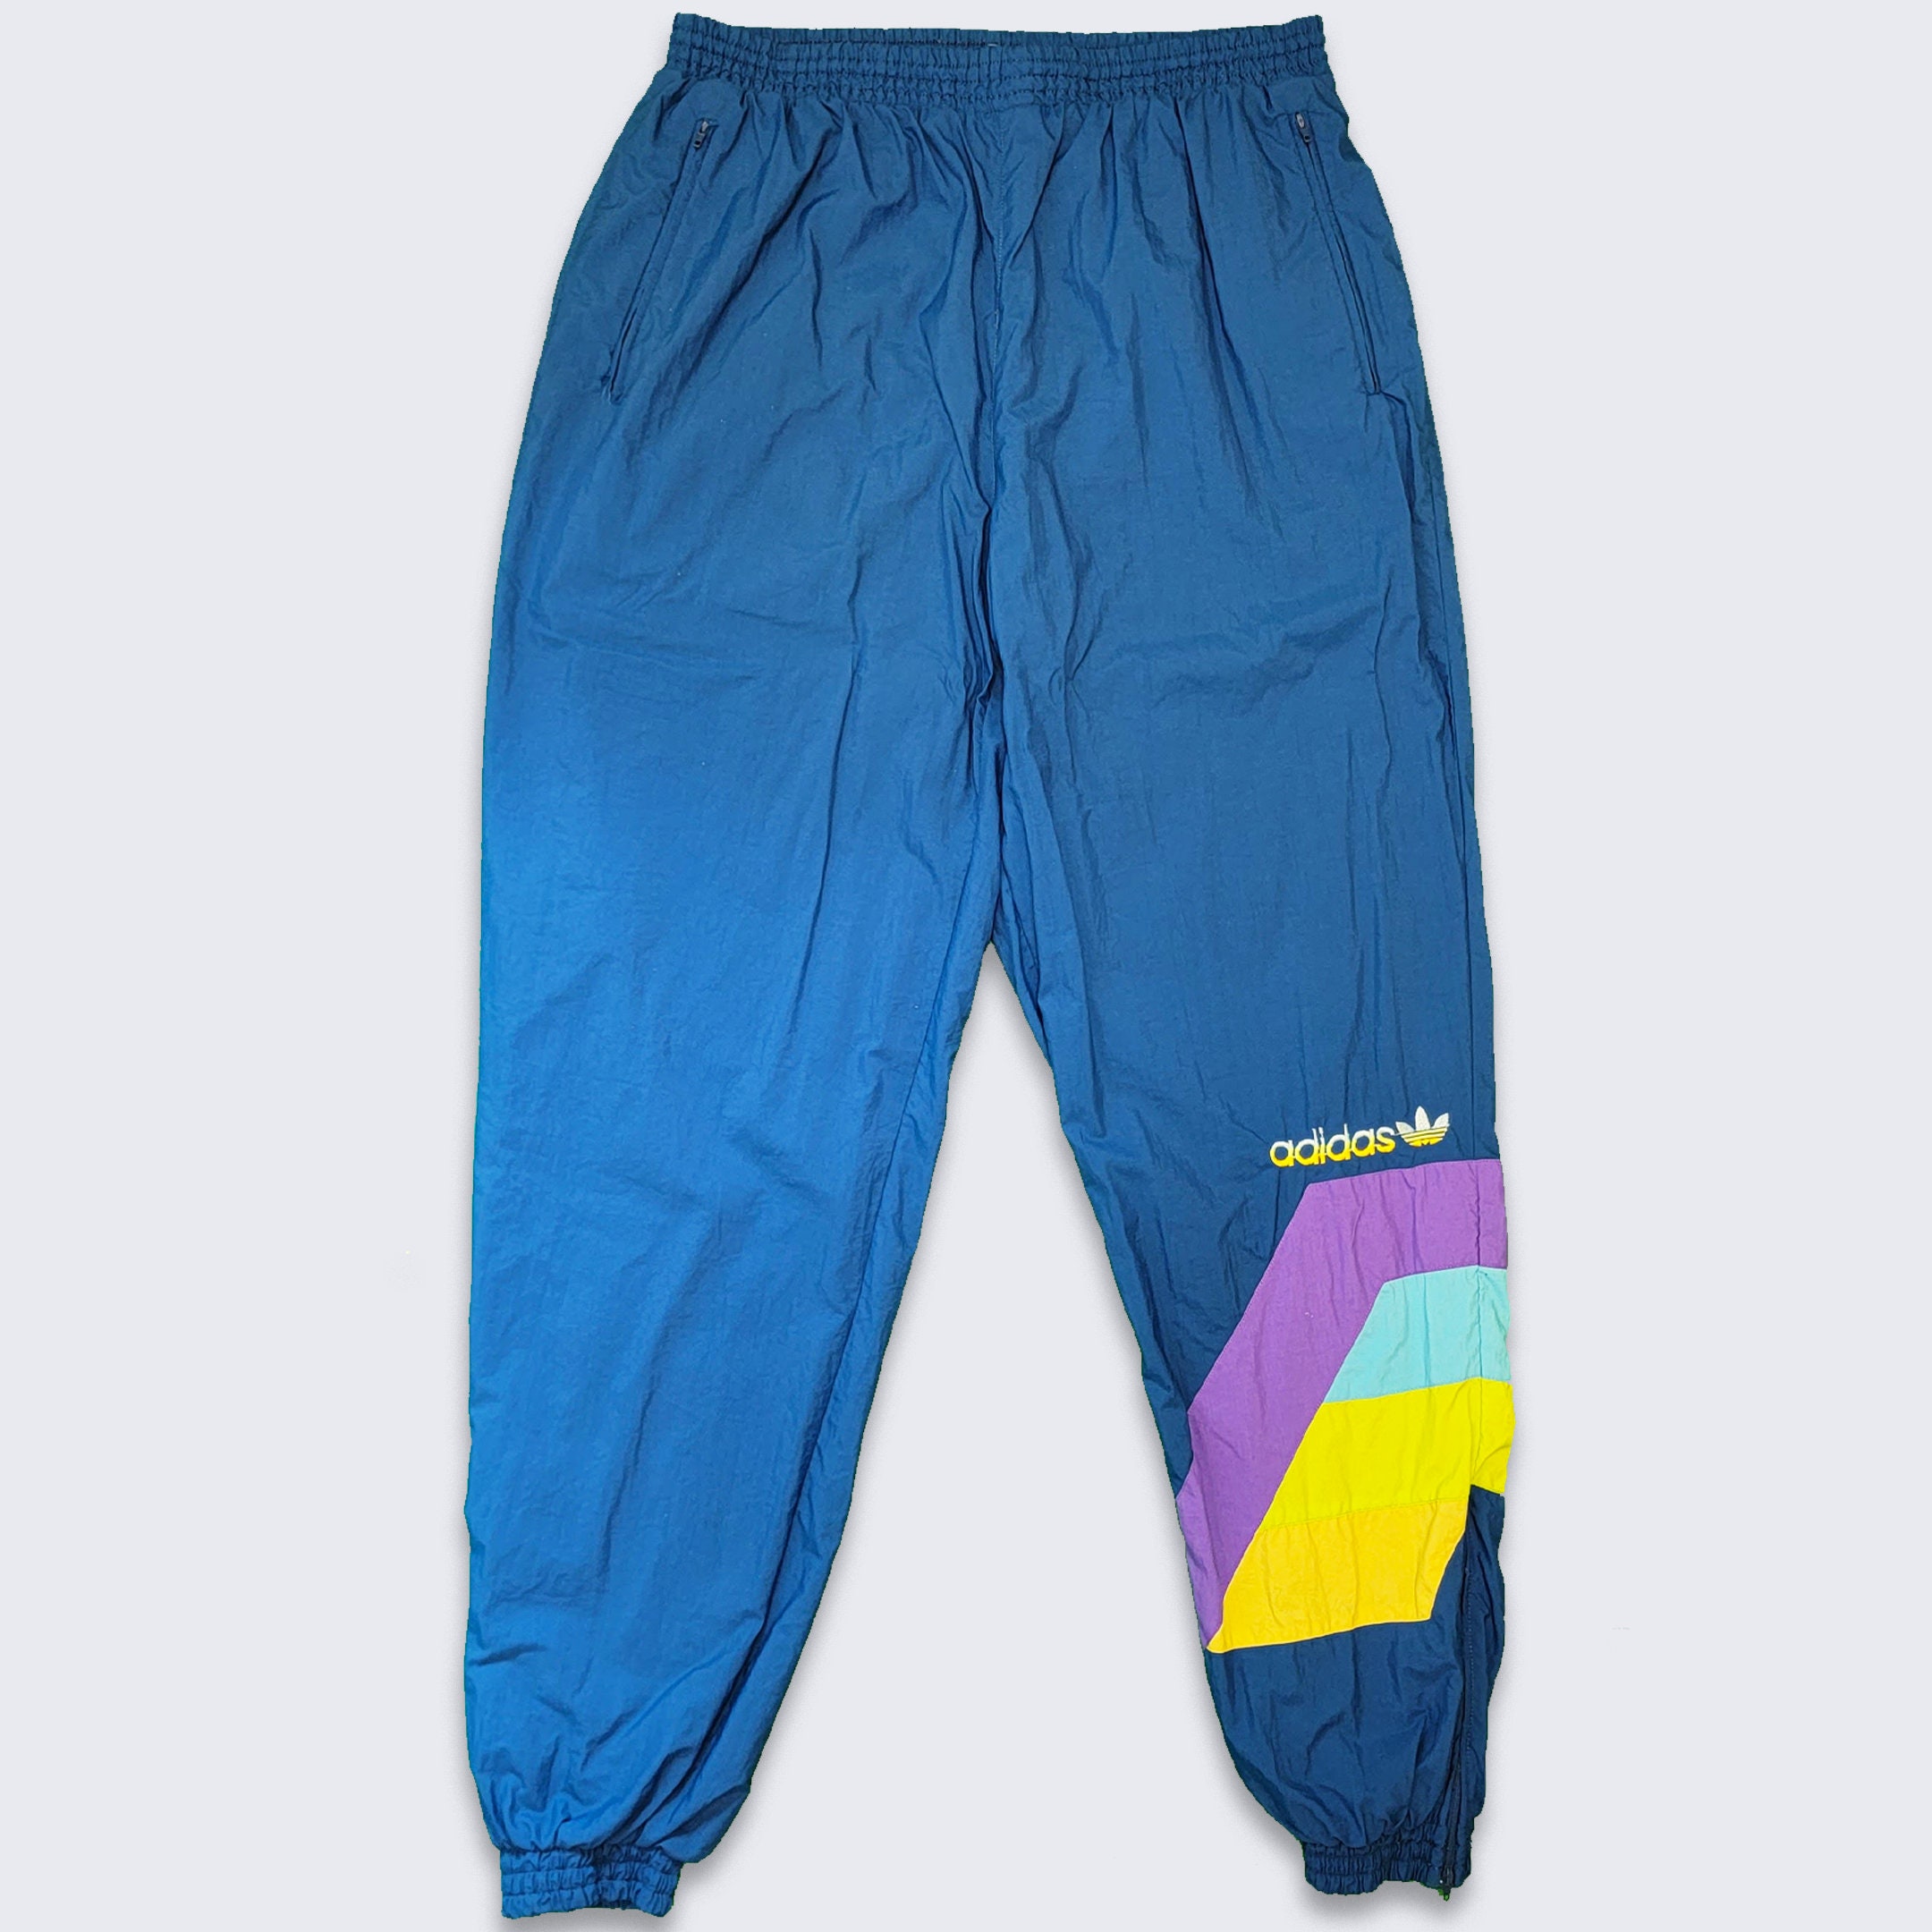 dentro de poco Autónomo contrabando Adidas Vintage 90s Color Block Joggers Pants Blue and Green - Etsy